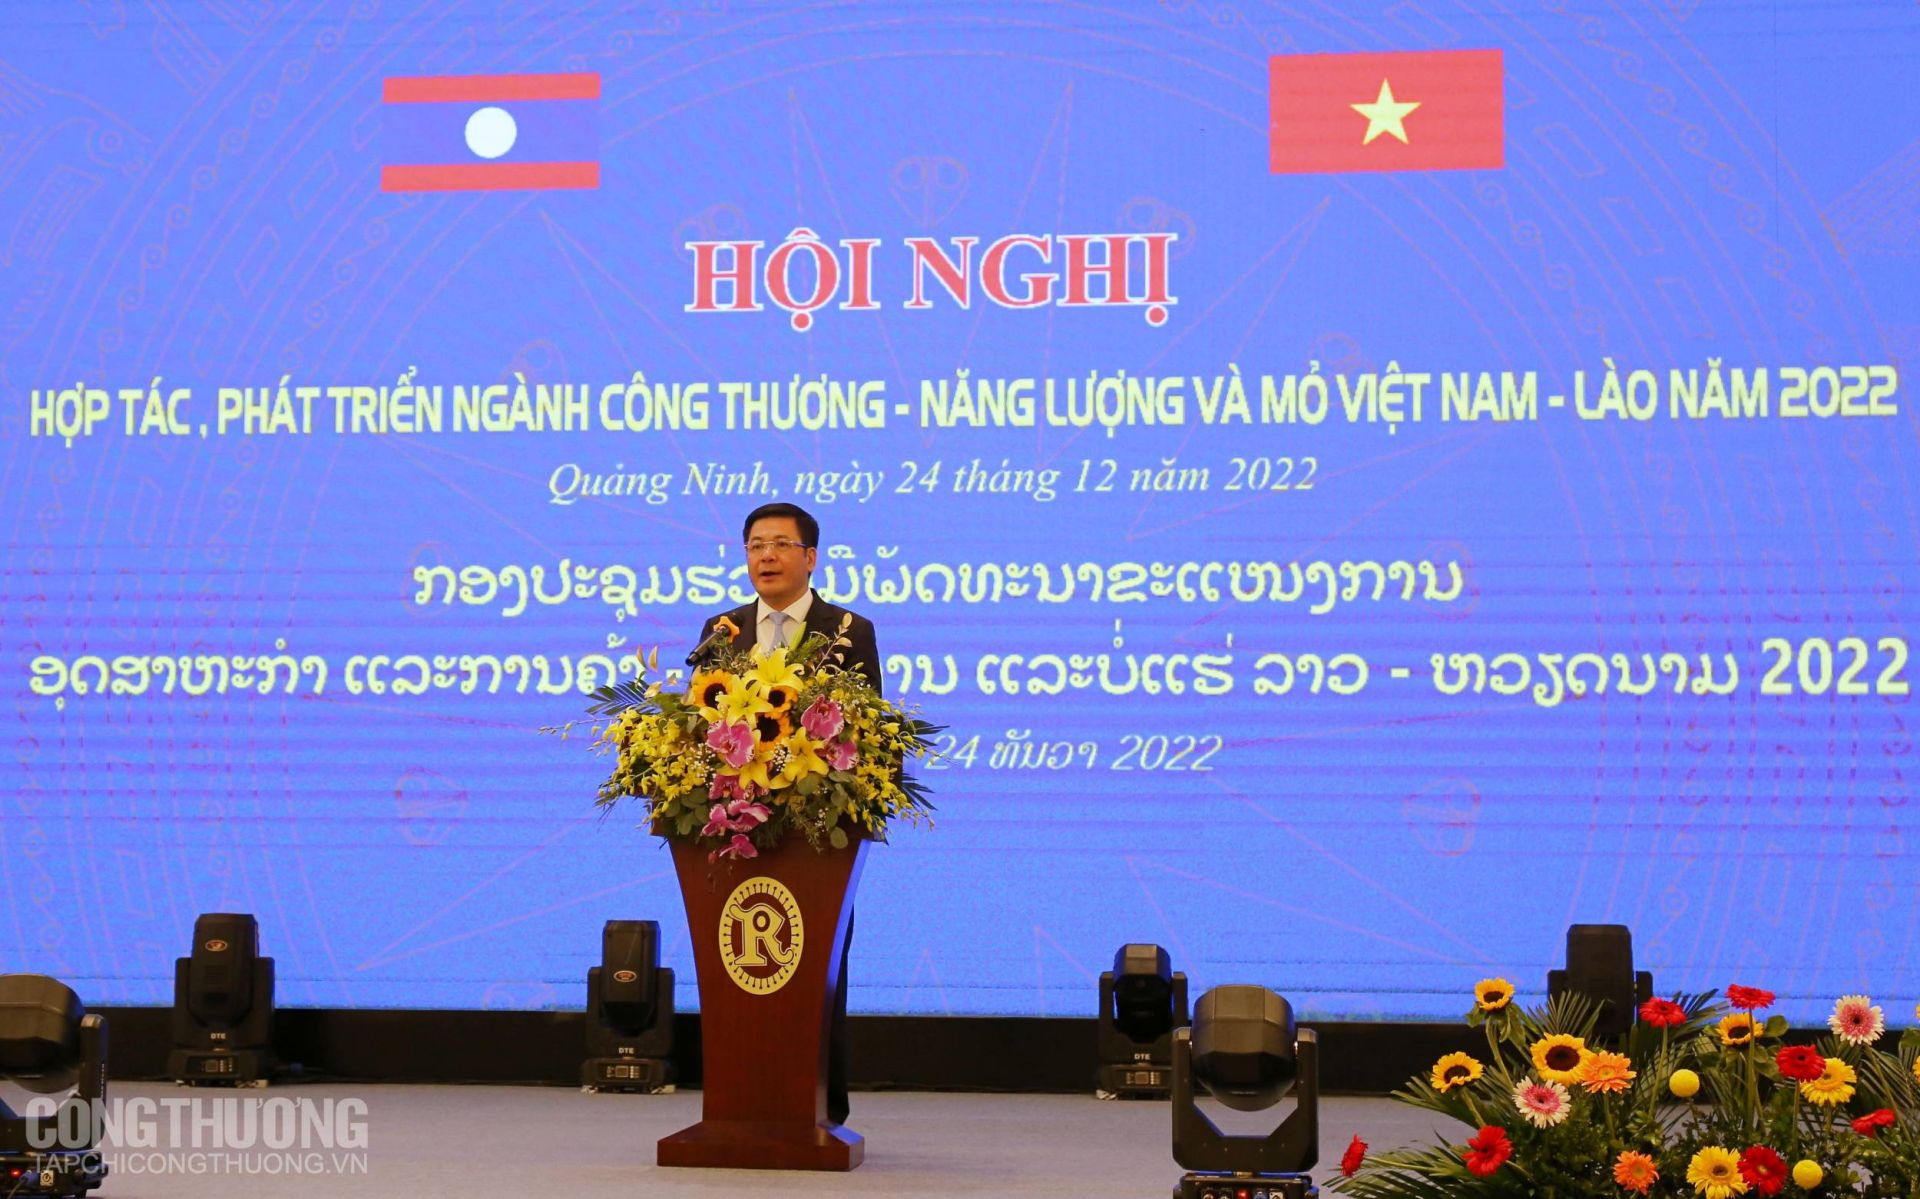 Hội nghị hợp tác phát triển Việt - Lào 2022